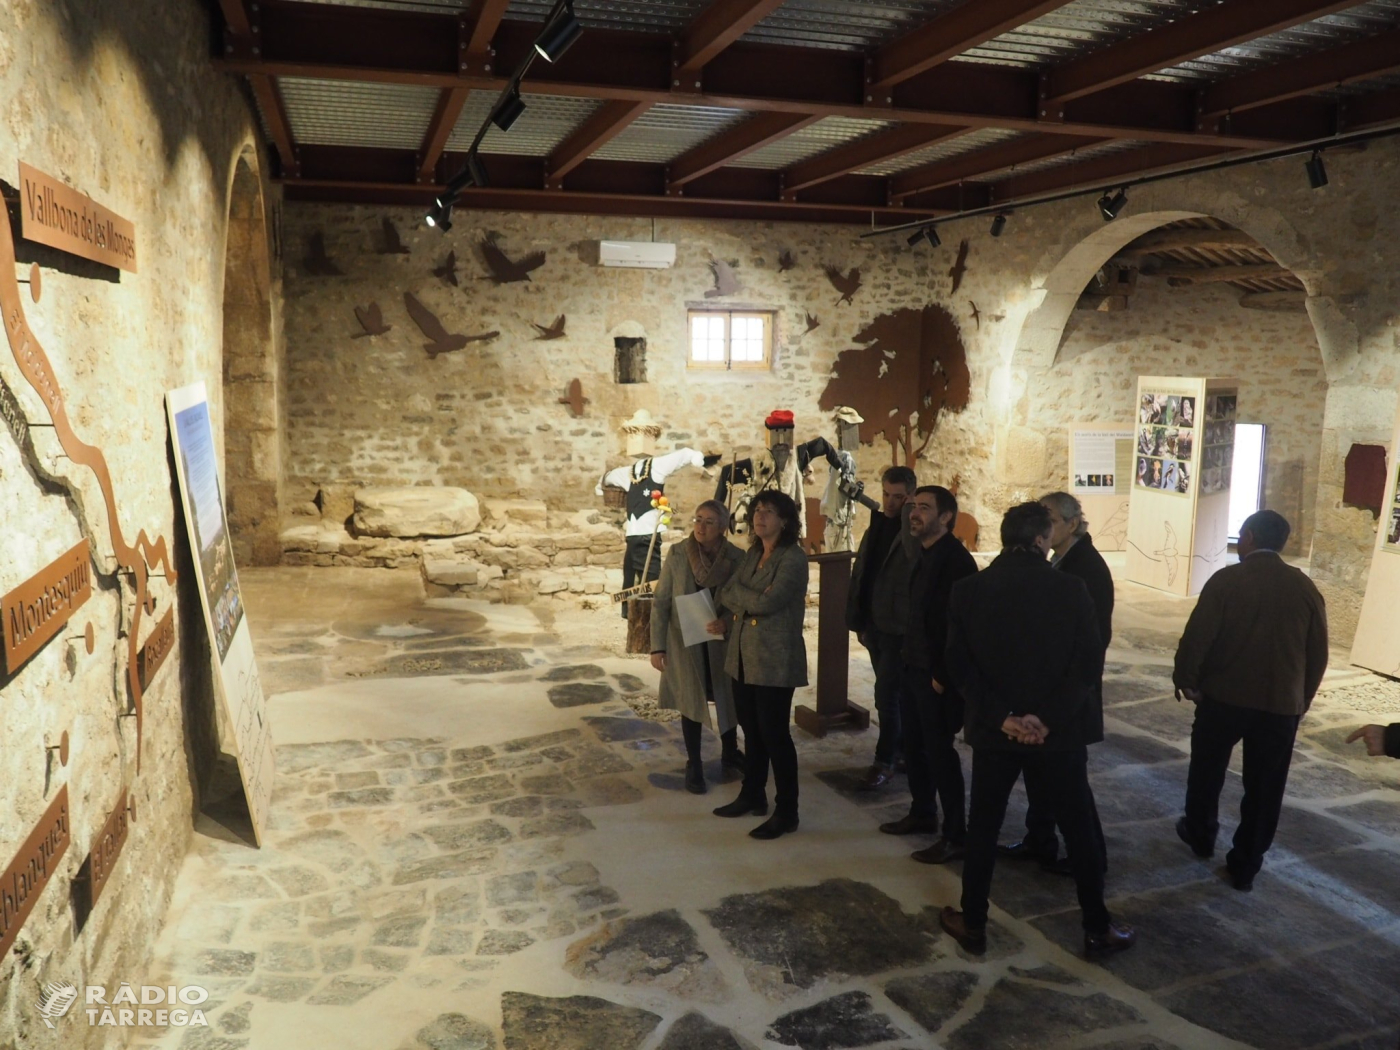 La consellera Jordà inaugura l'Espai Maldanell a Vallbona de les Monges